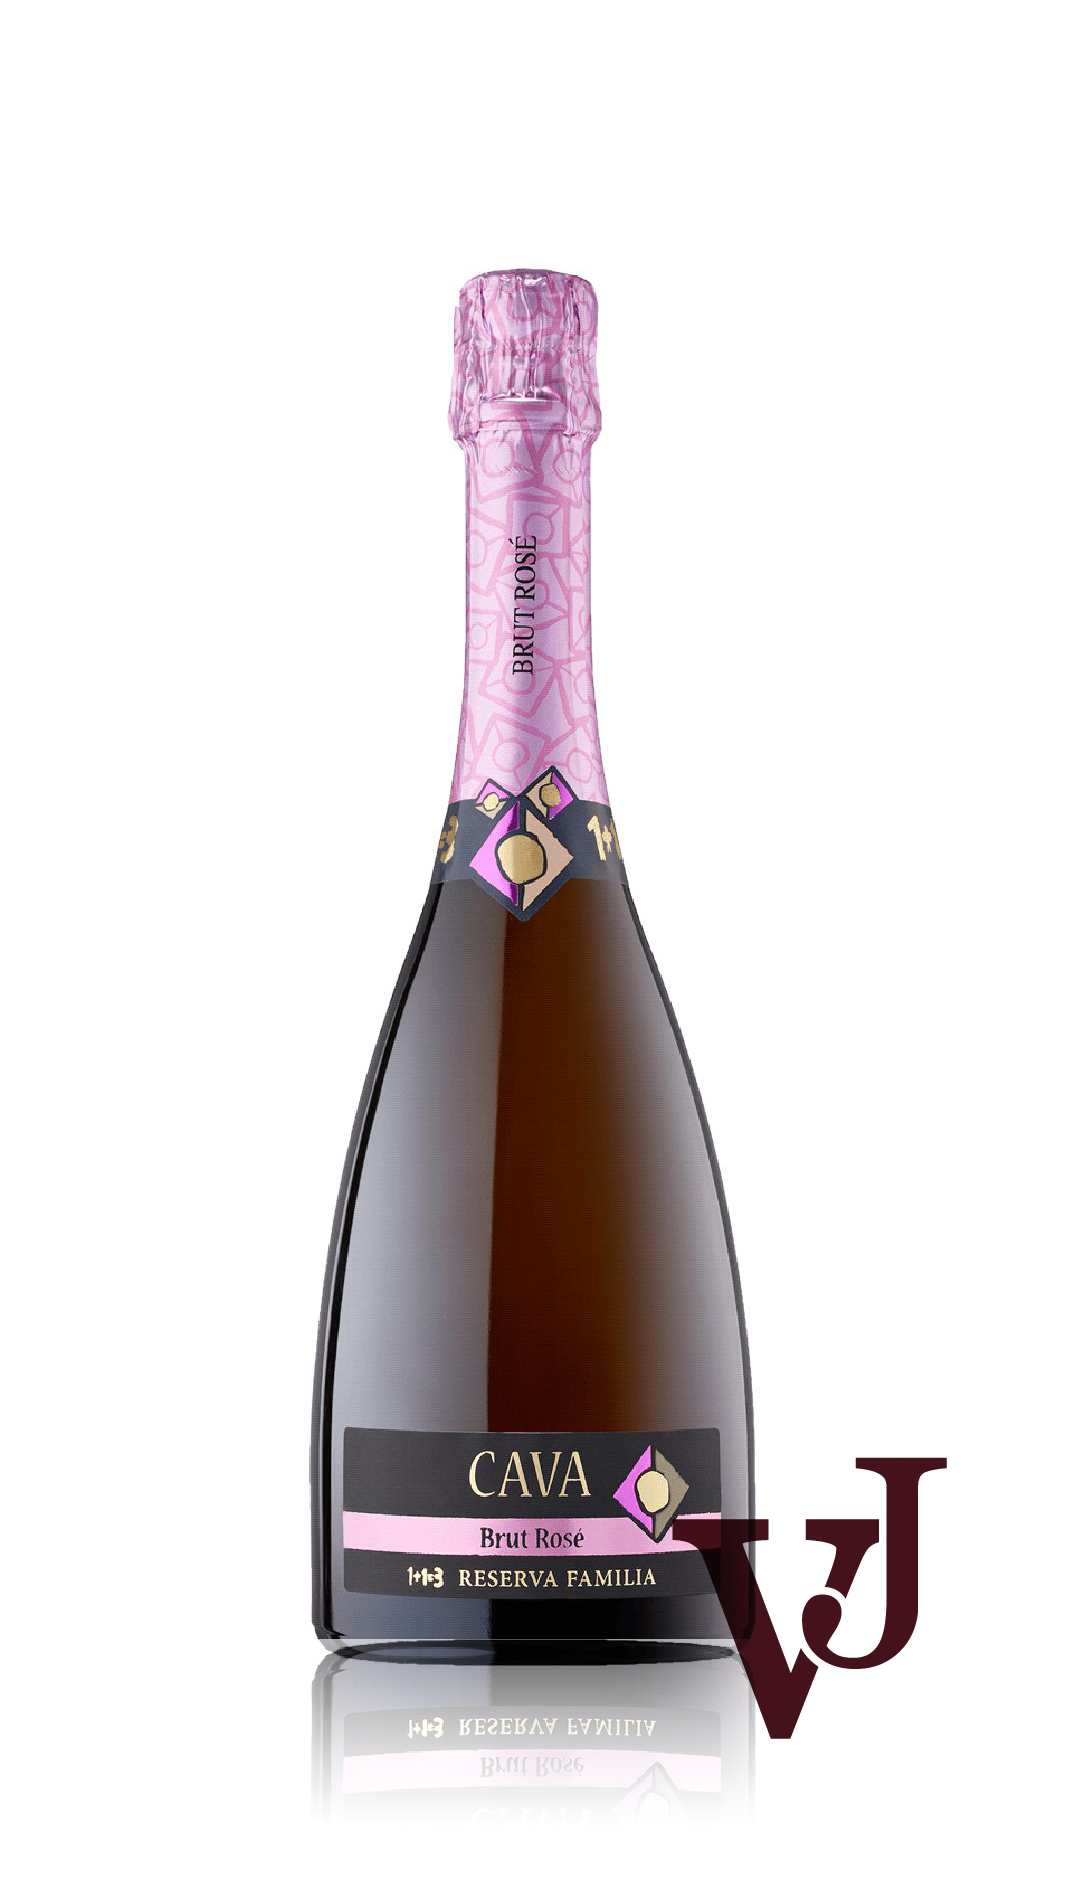 Mousserande Vin - Cava Pinot Noir Rosé Organic 1+1=3 Reserva Familia artikel nummer 221601 från producenten 1+1=3 U Mes U Fan Tres S.L. från området Spanien